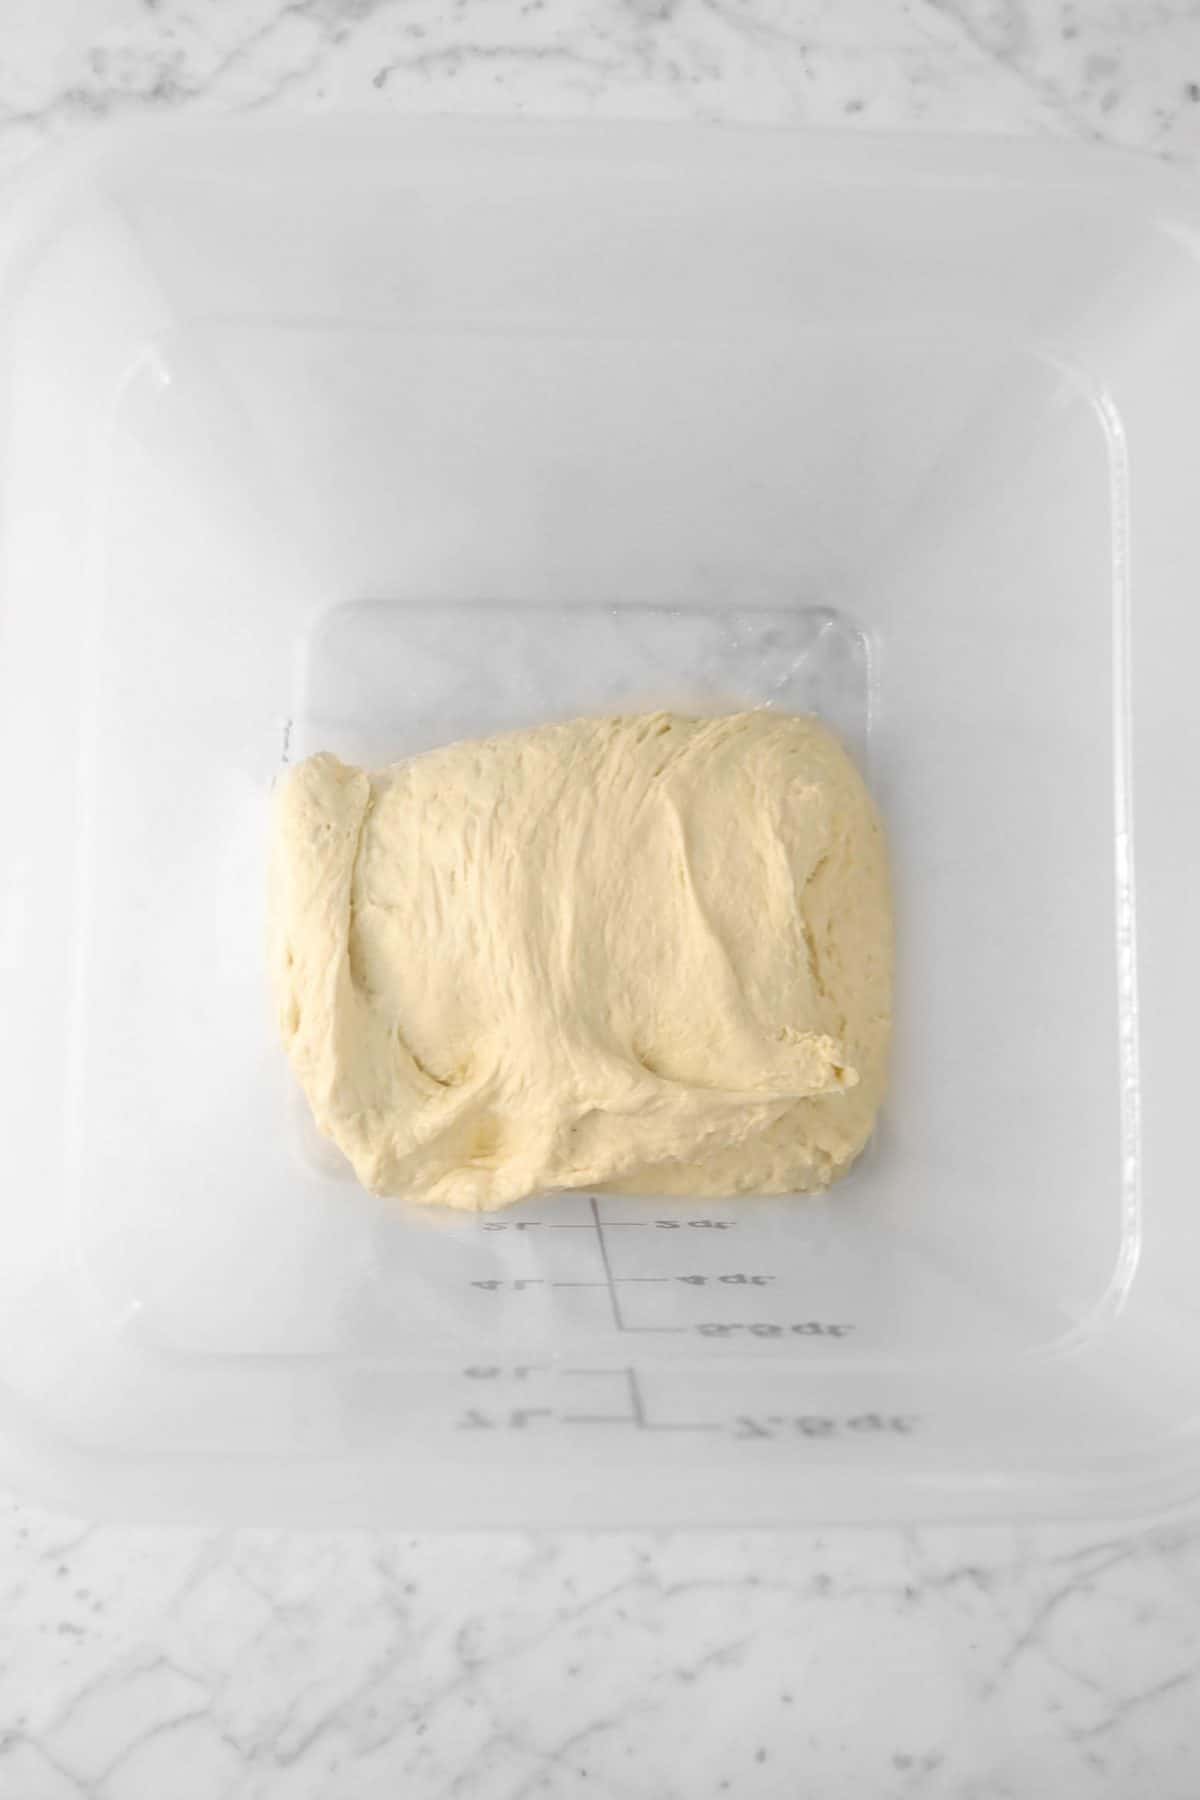 dough folded in half in a plastic bucket